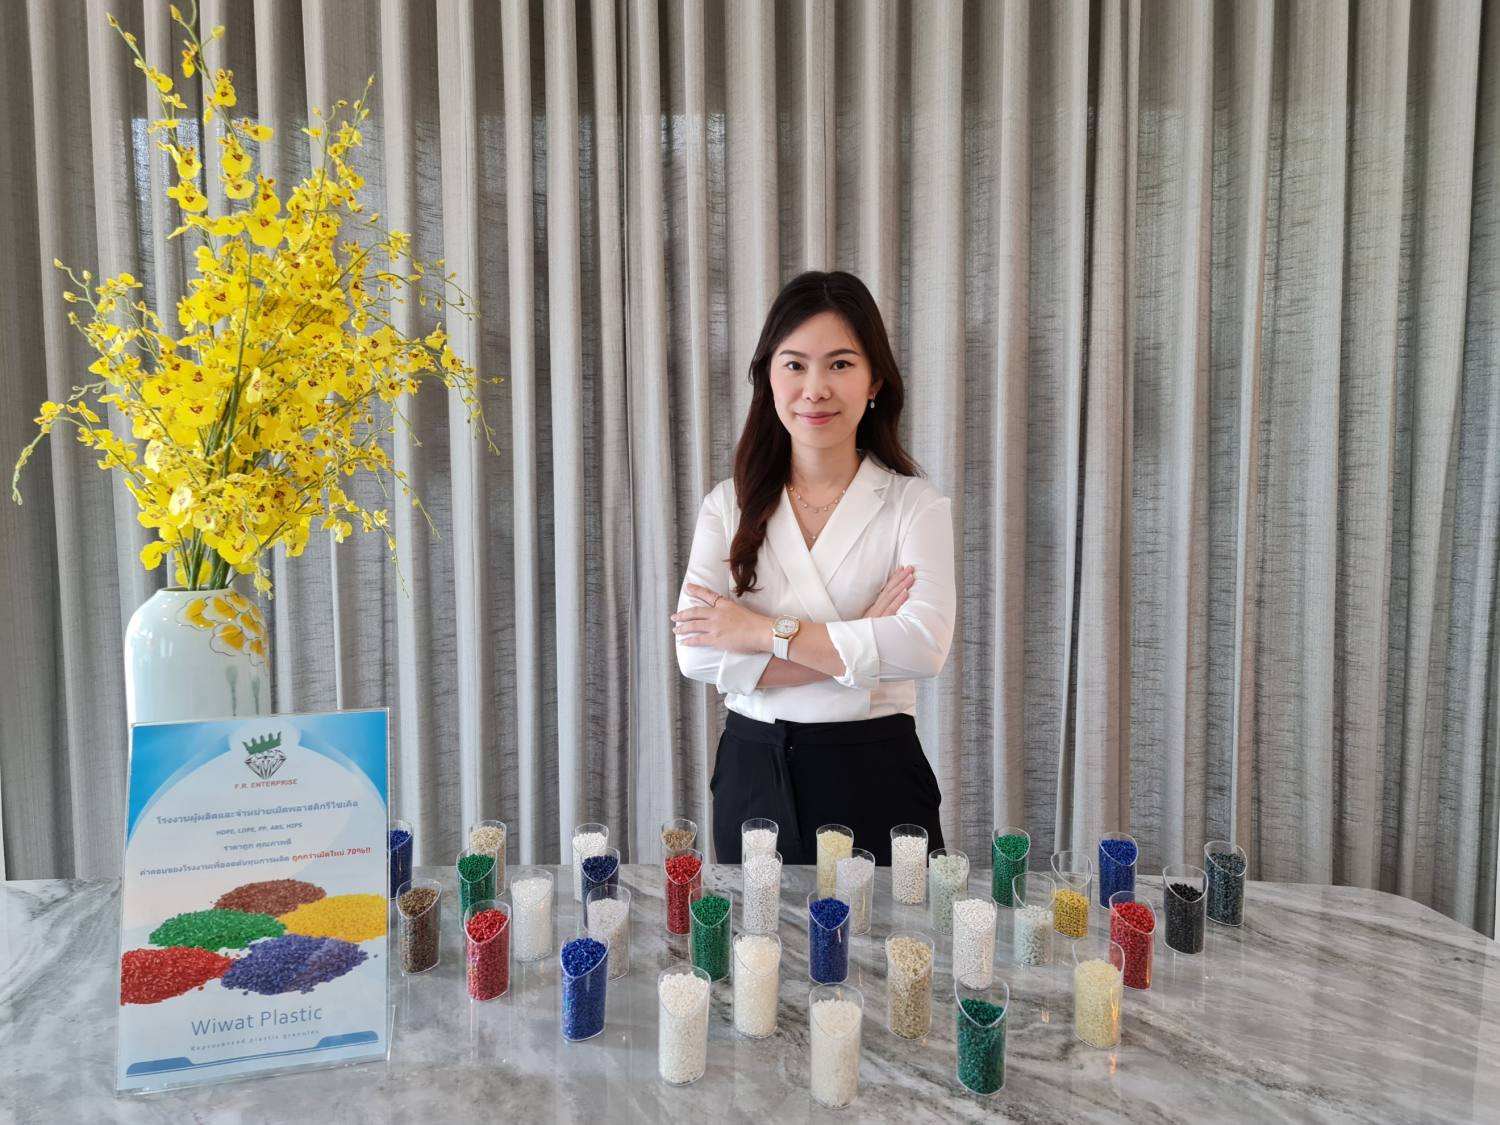 泰國可再生塑料製造商和出口商Plastmax第二代領導人Nattanun Sripremanan